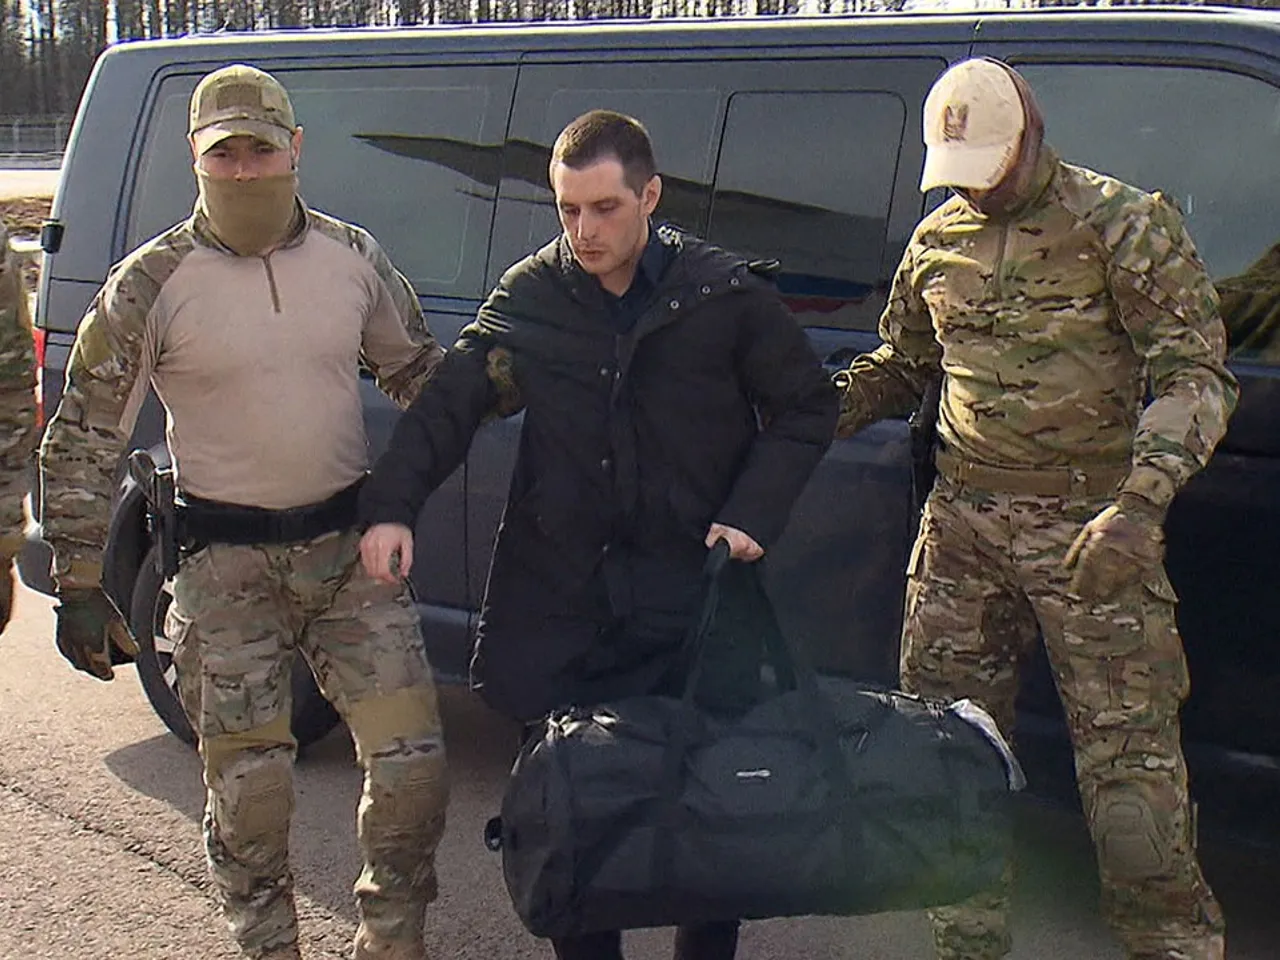 بالفيديو: مشهد حقيقي وكأنّه فلم بوليسي..تبادل سجينين أمريكي وروسي في مطار تركي